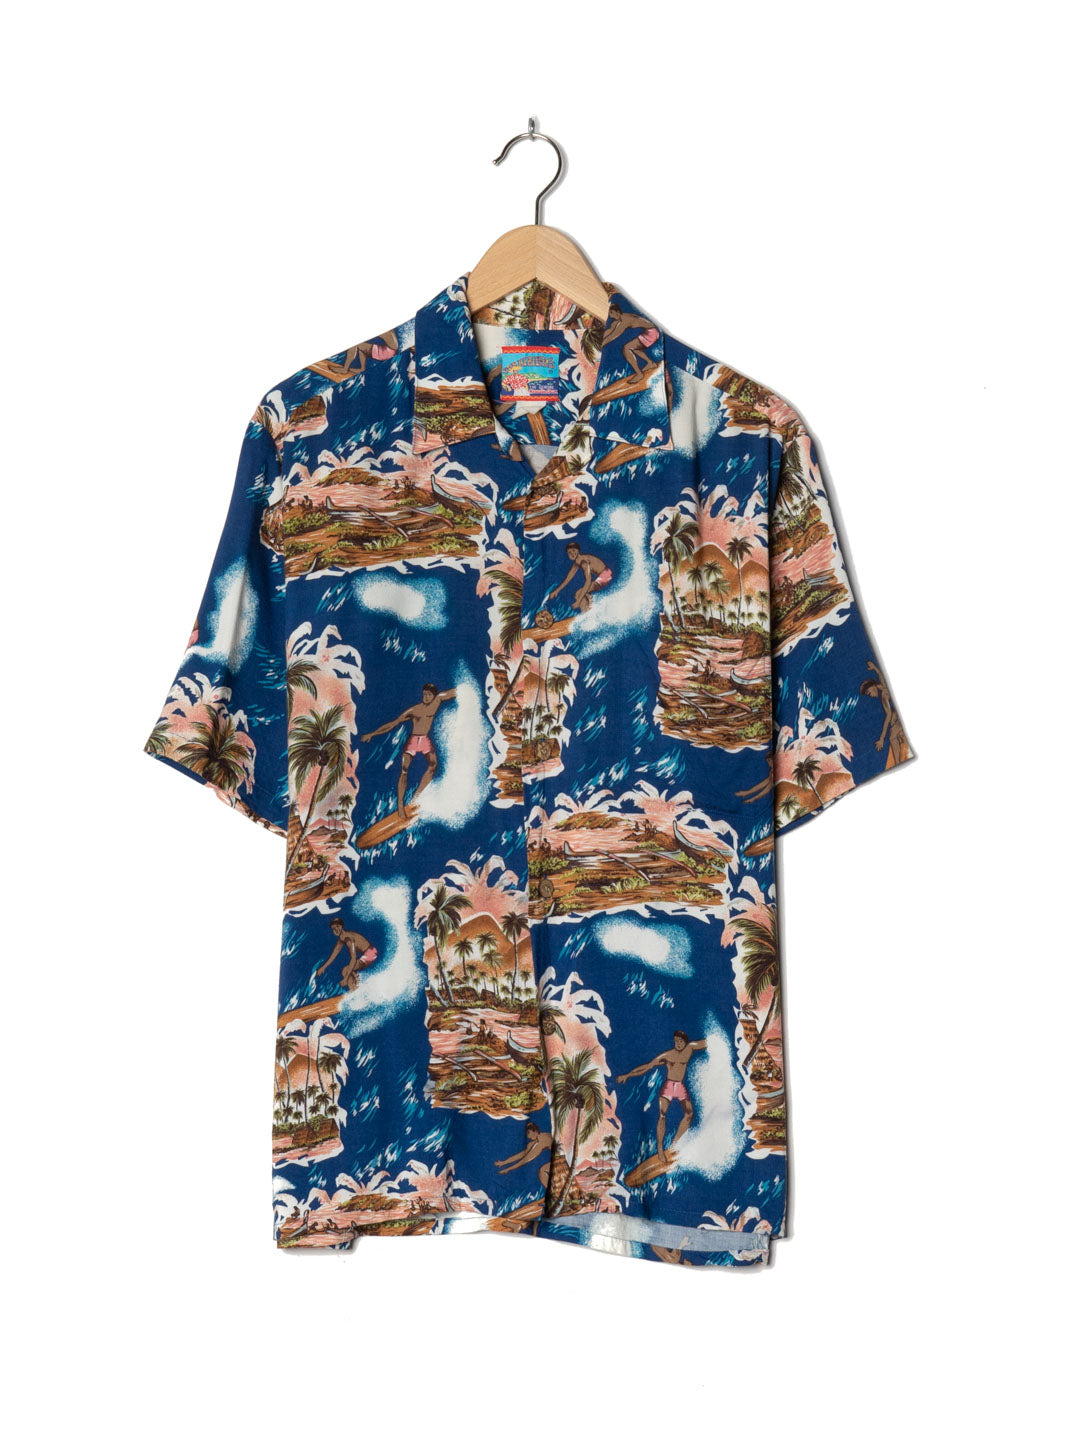 Joe Kealuha's Mixed Colours Hawaiian Shirt